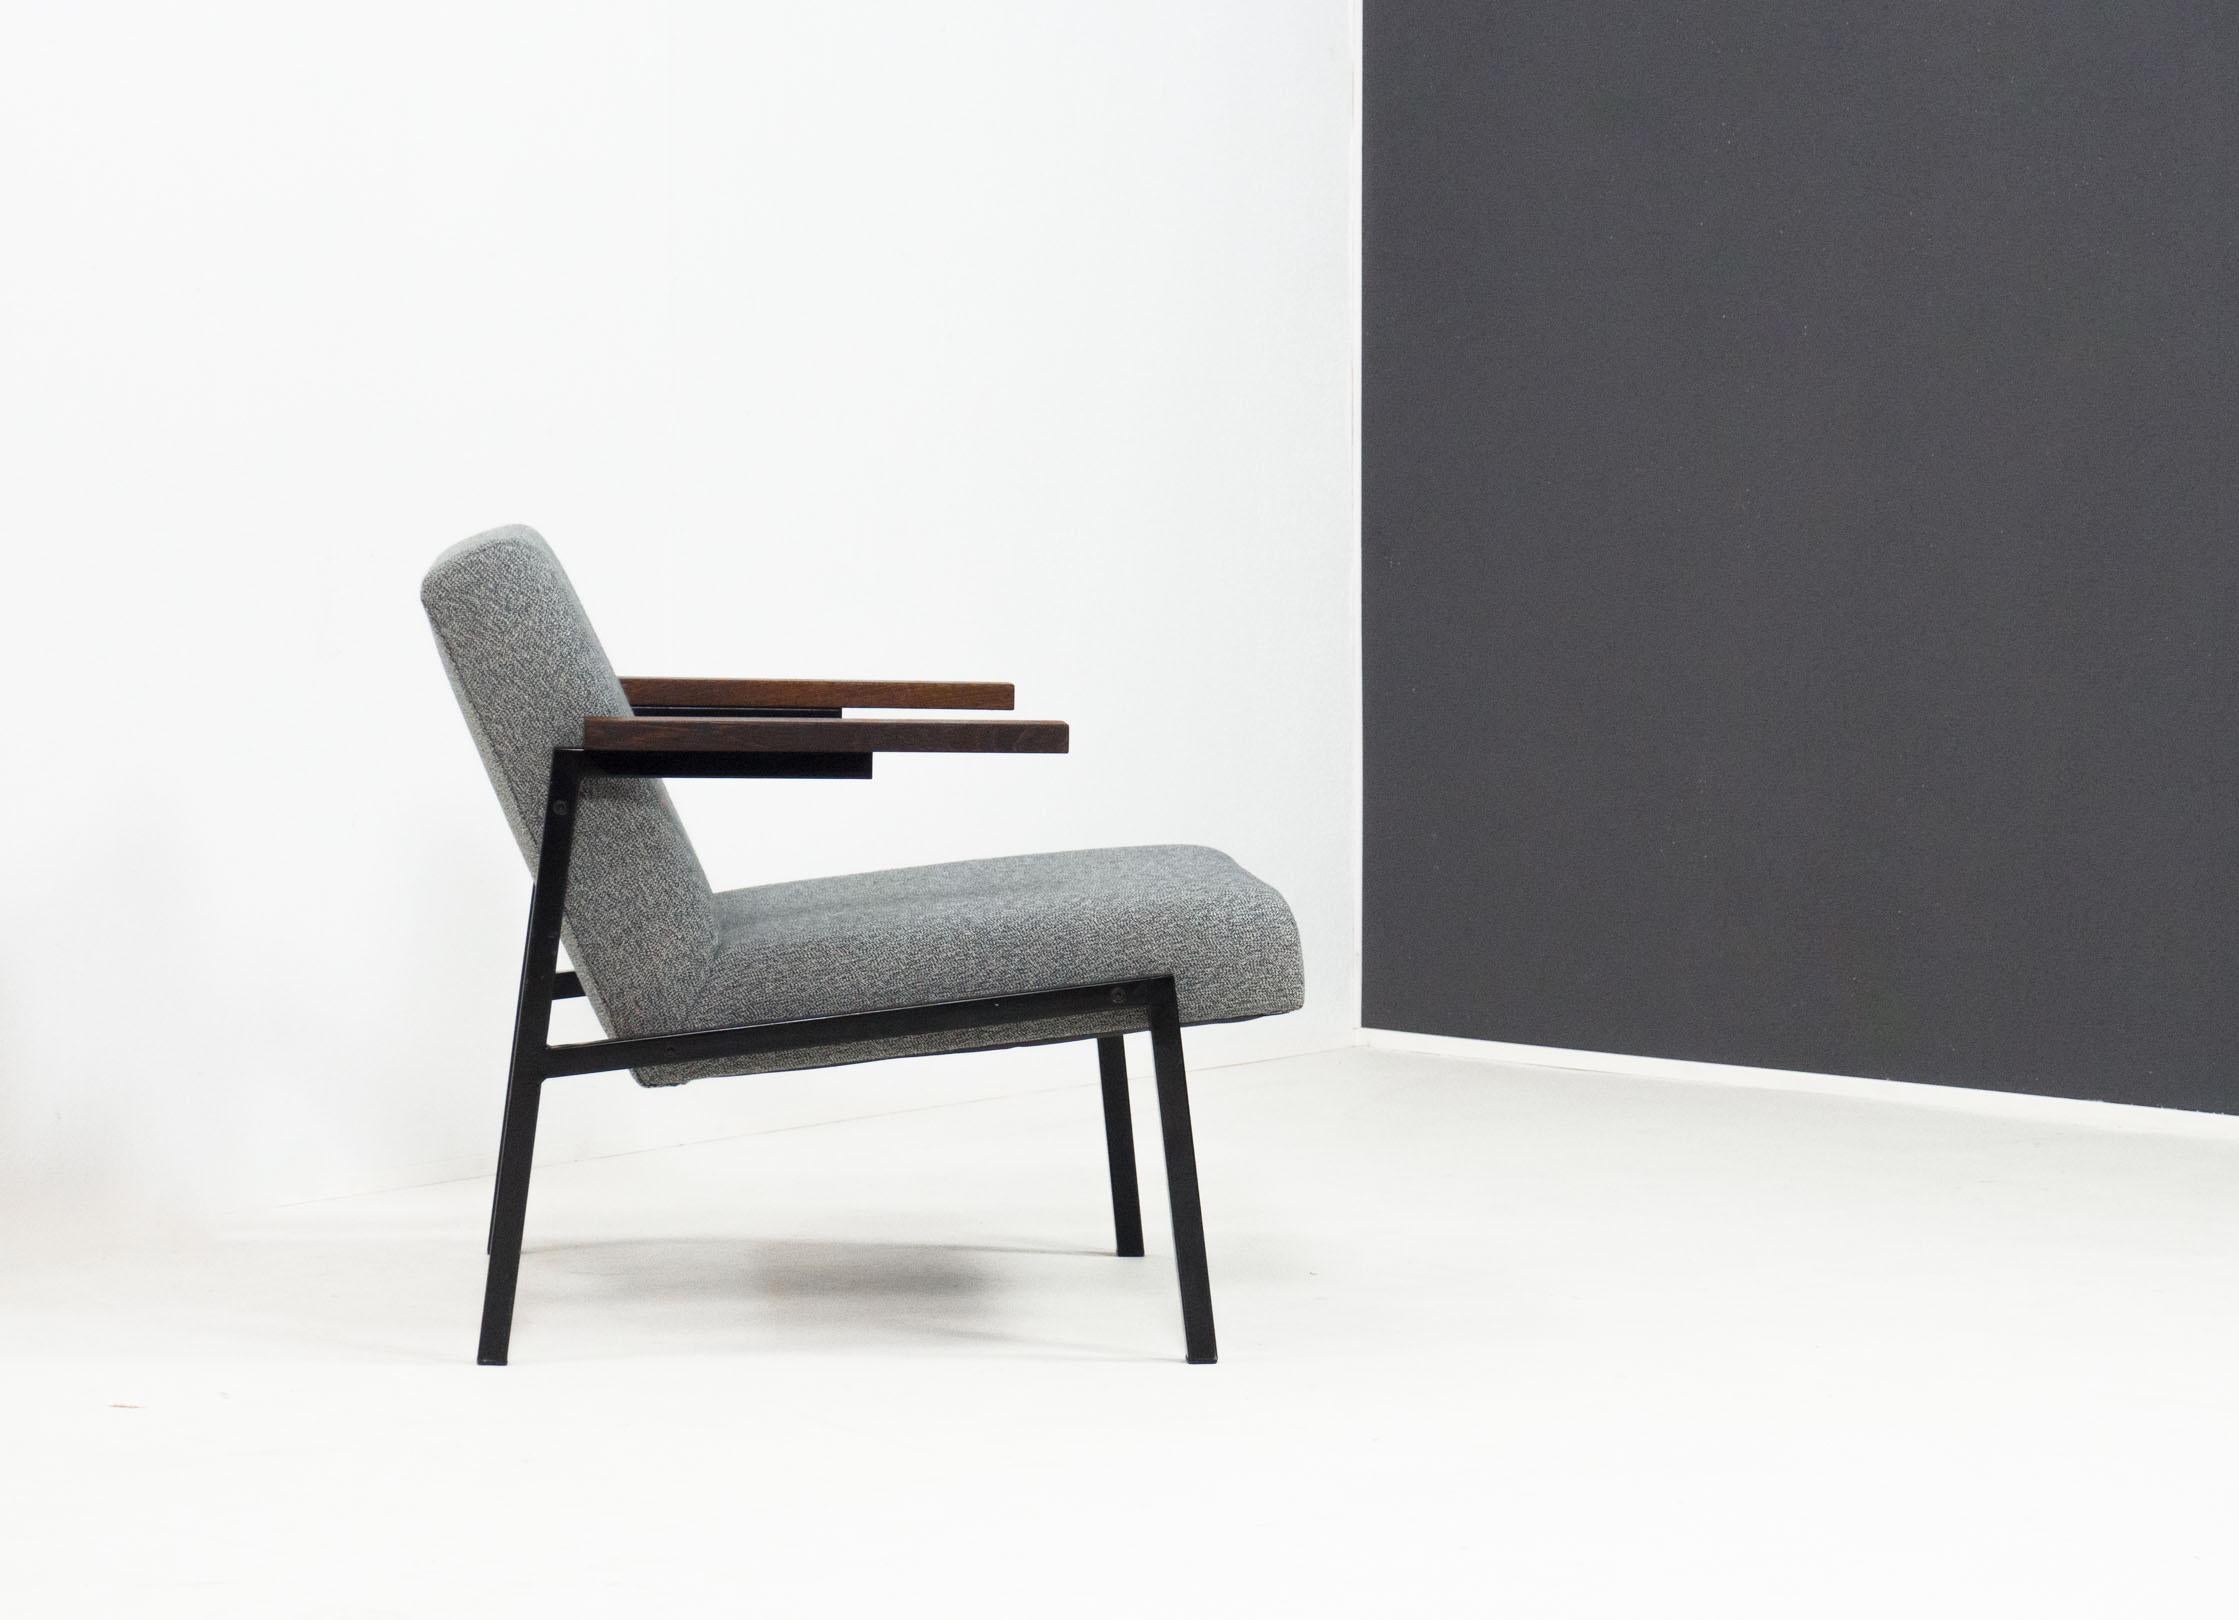 Chaise longue portant le nom de modèle SZ66, conçue par Martin Visser pour le producteur Spectrum en 1964, Pays-Bas.

Cette chaise longue iconique est composée d'une structure en métal laqué noir et d'accoudoirs en bois de wengé massif. Le siège est